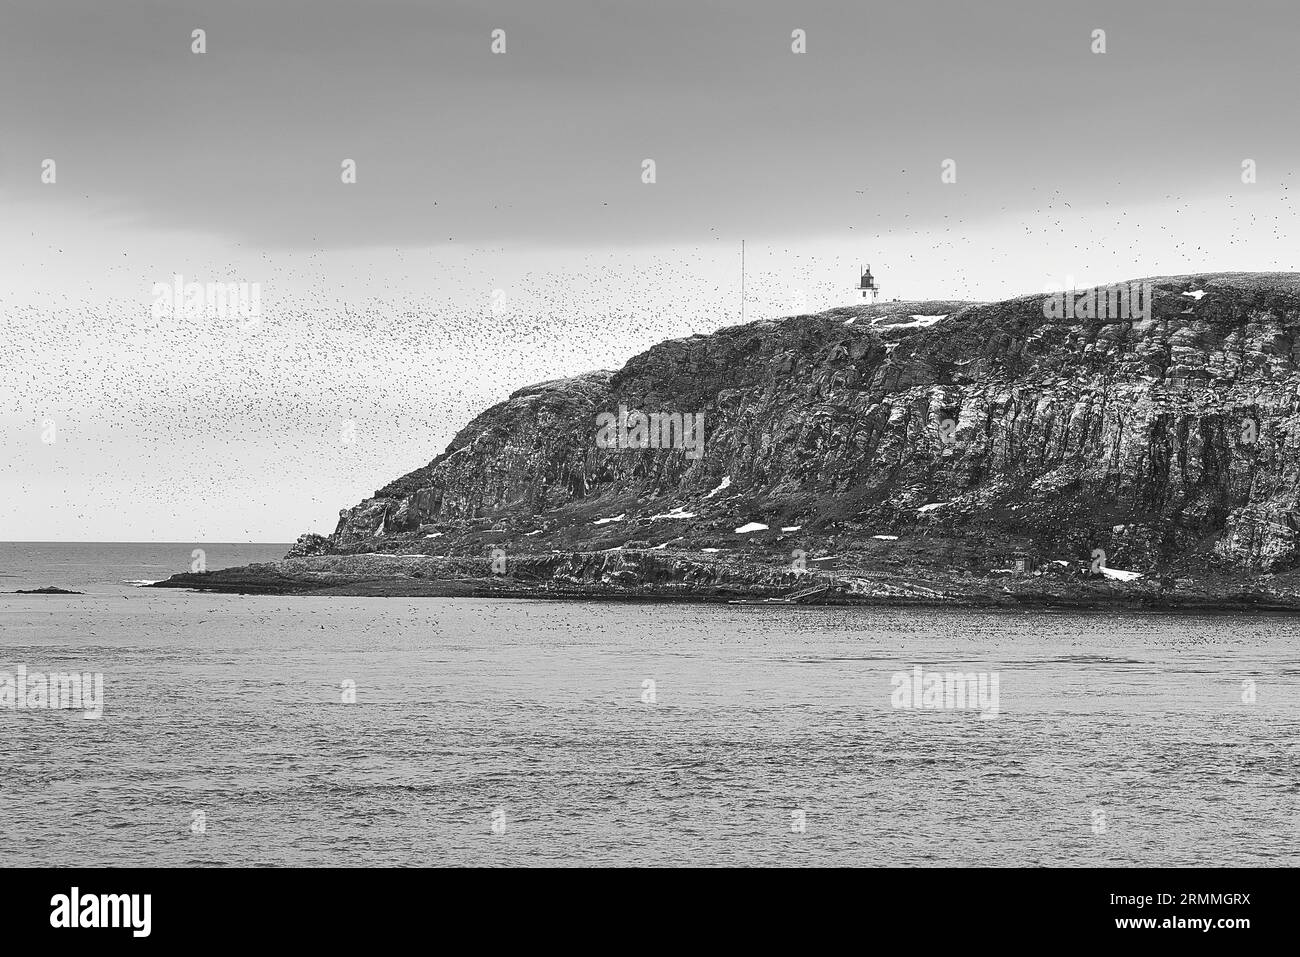 Photo en noir et blanc du phare de Vardø, construit en 1896 sur l'île de Hornøya, entouré d'Un grand troupeau d'oiseaux marins. Norvège. Banque D'Images